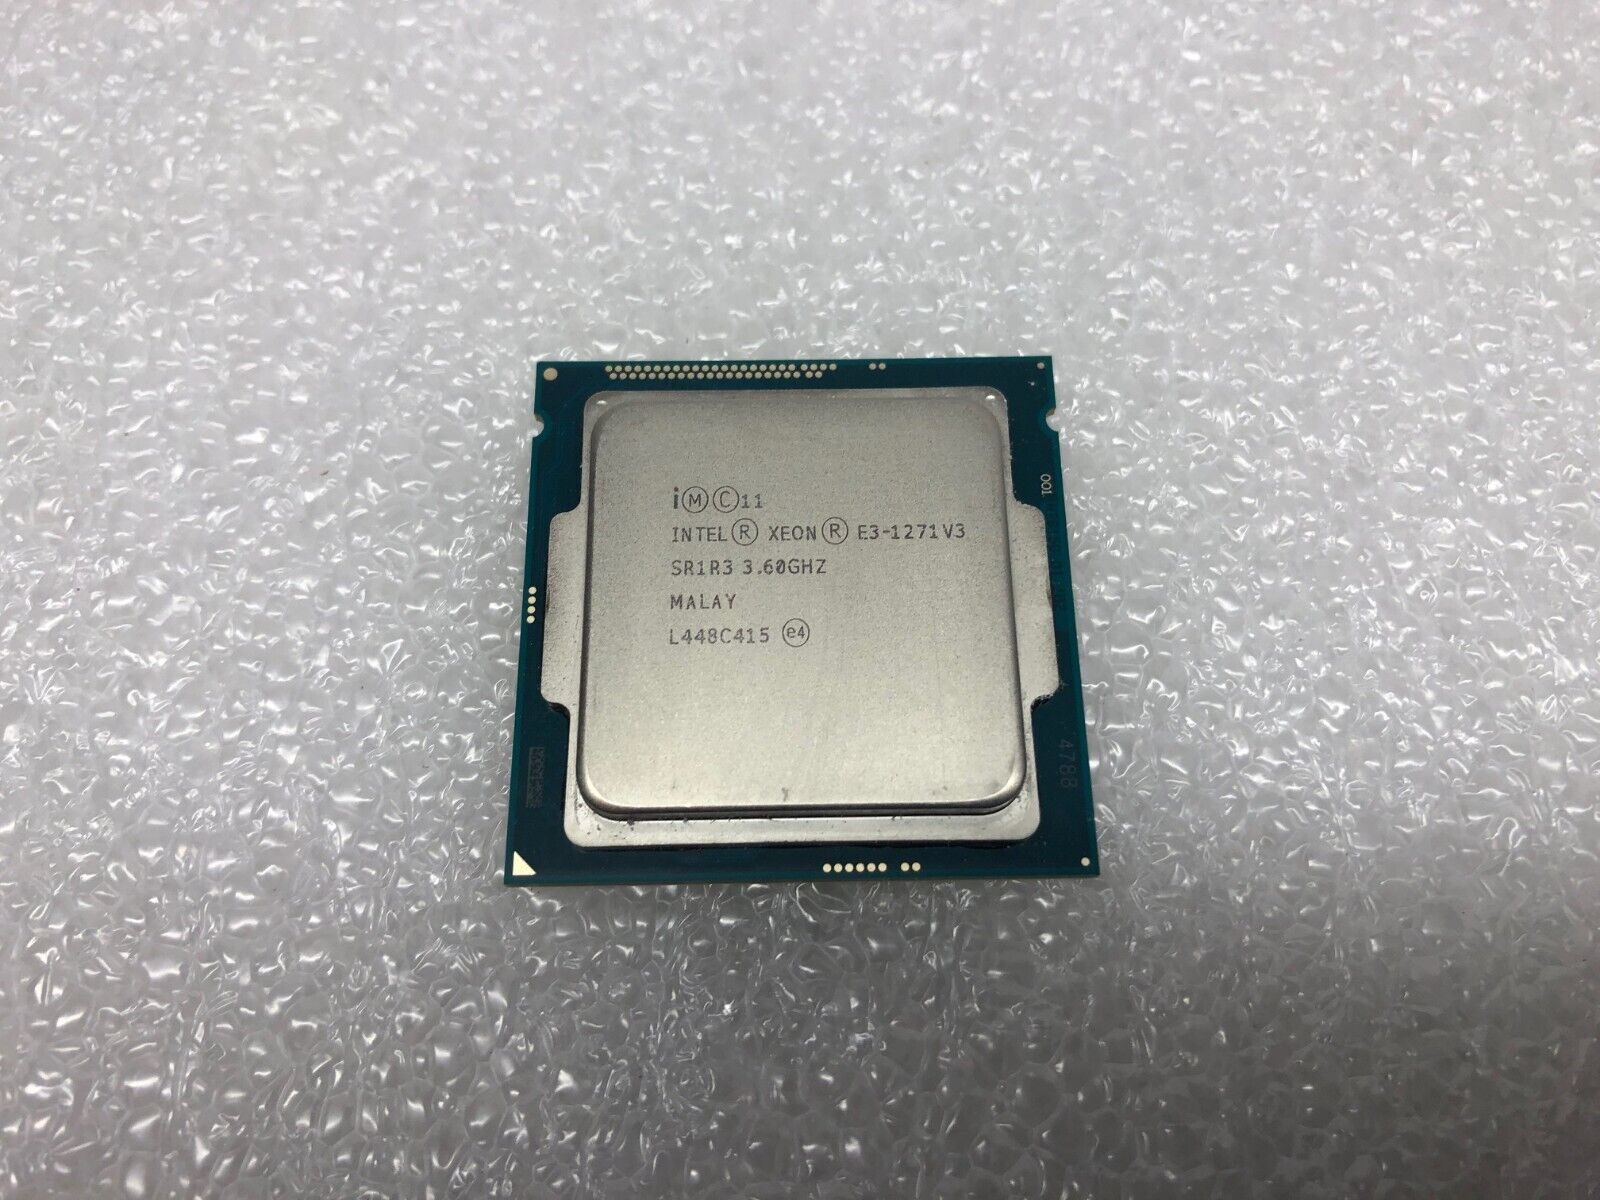 Intel Xeon E3-1271 v3 Quad Core 3.6GHz 8MB LGA1150 Processor SR1R3